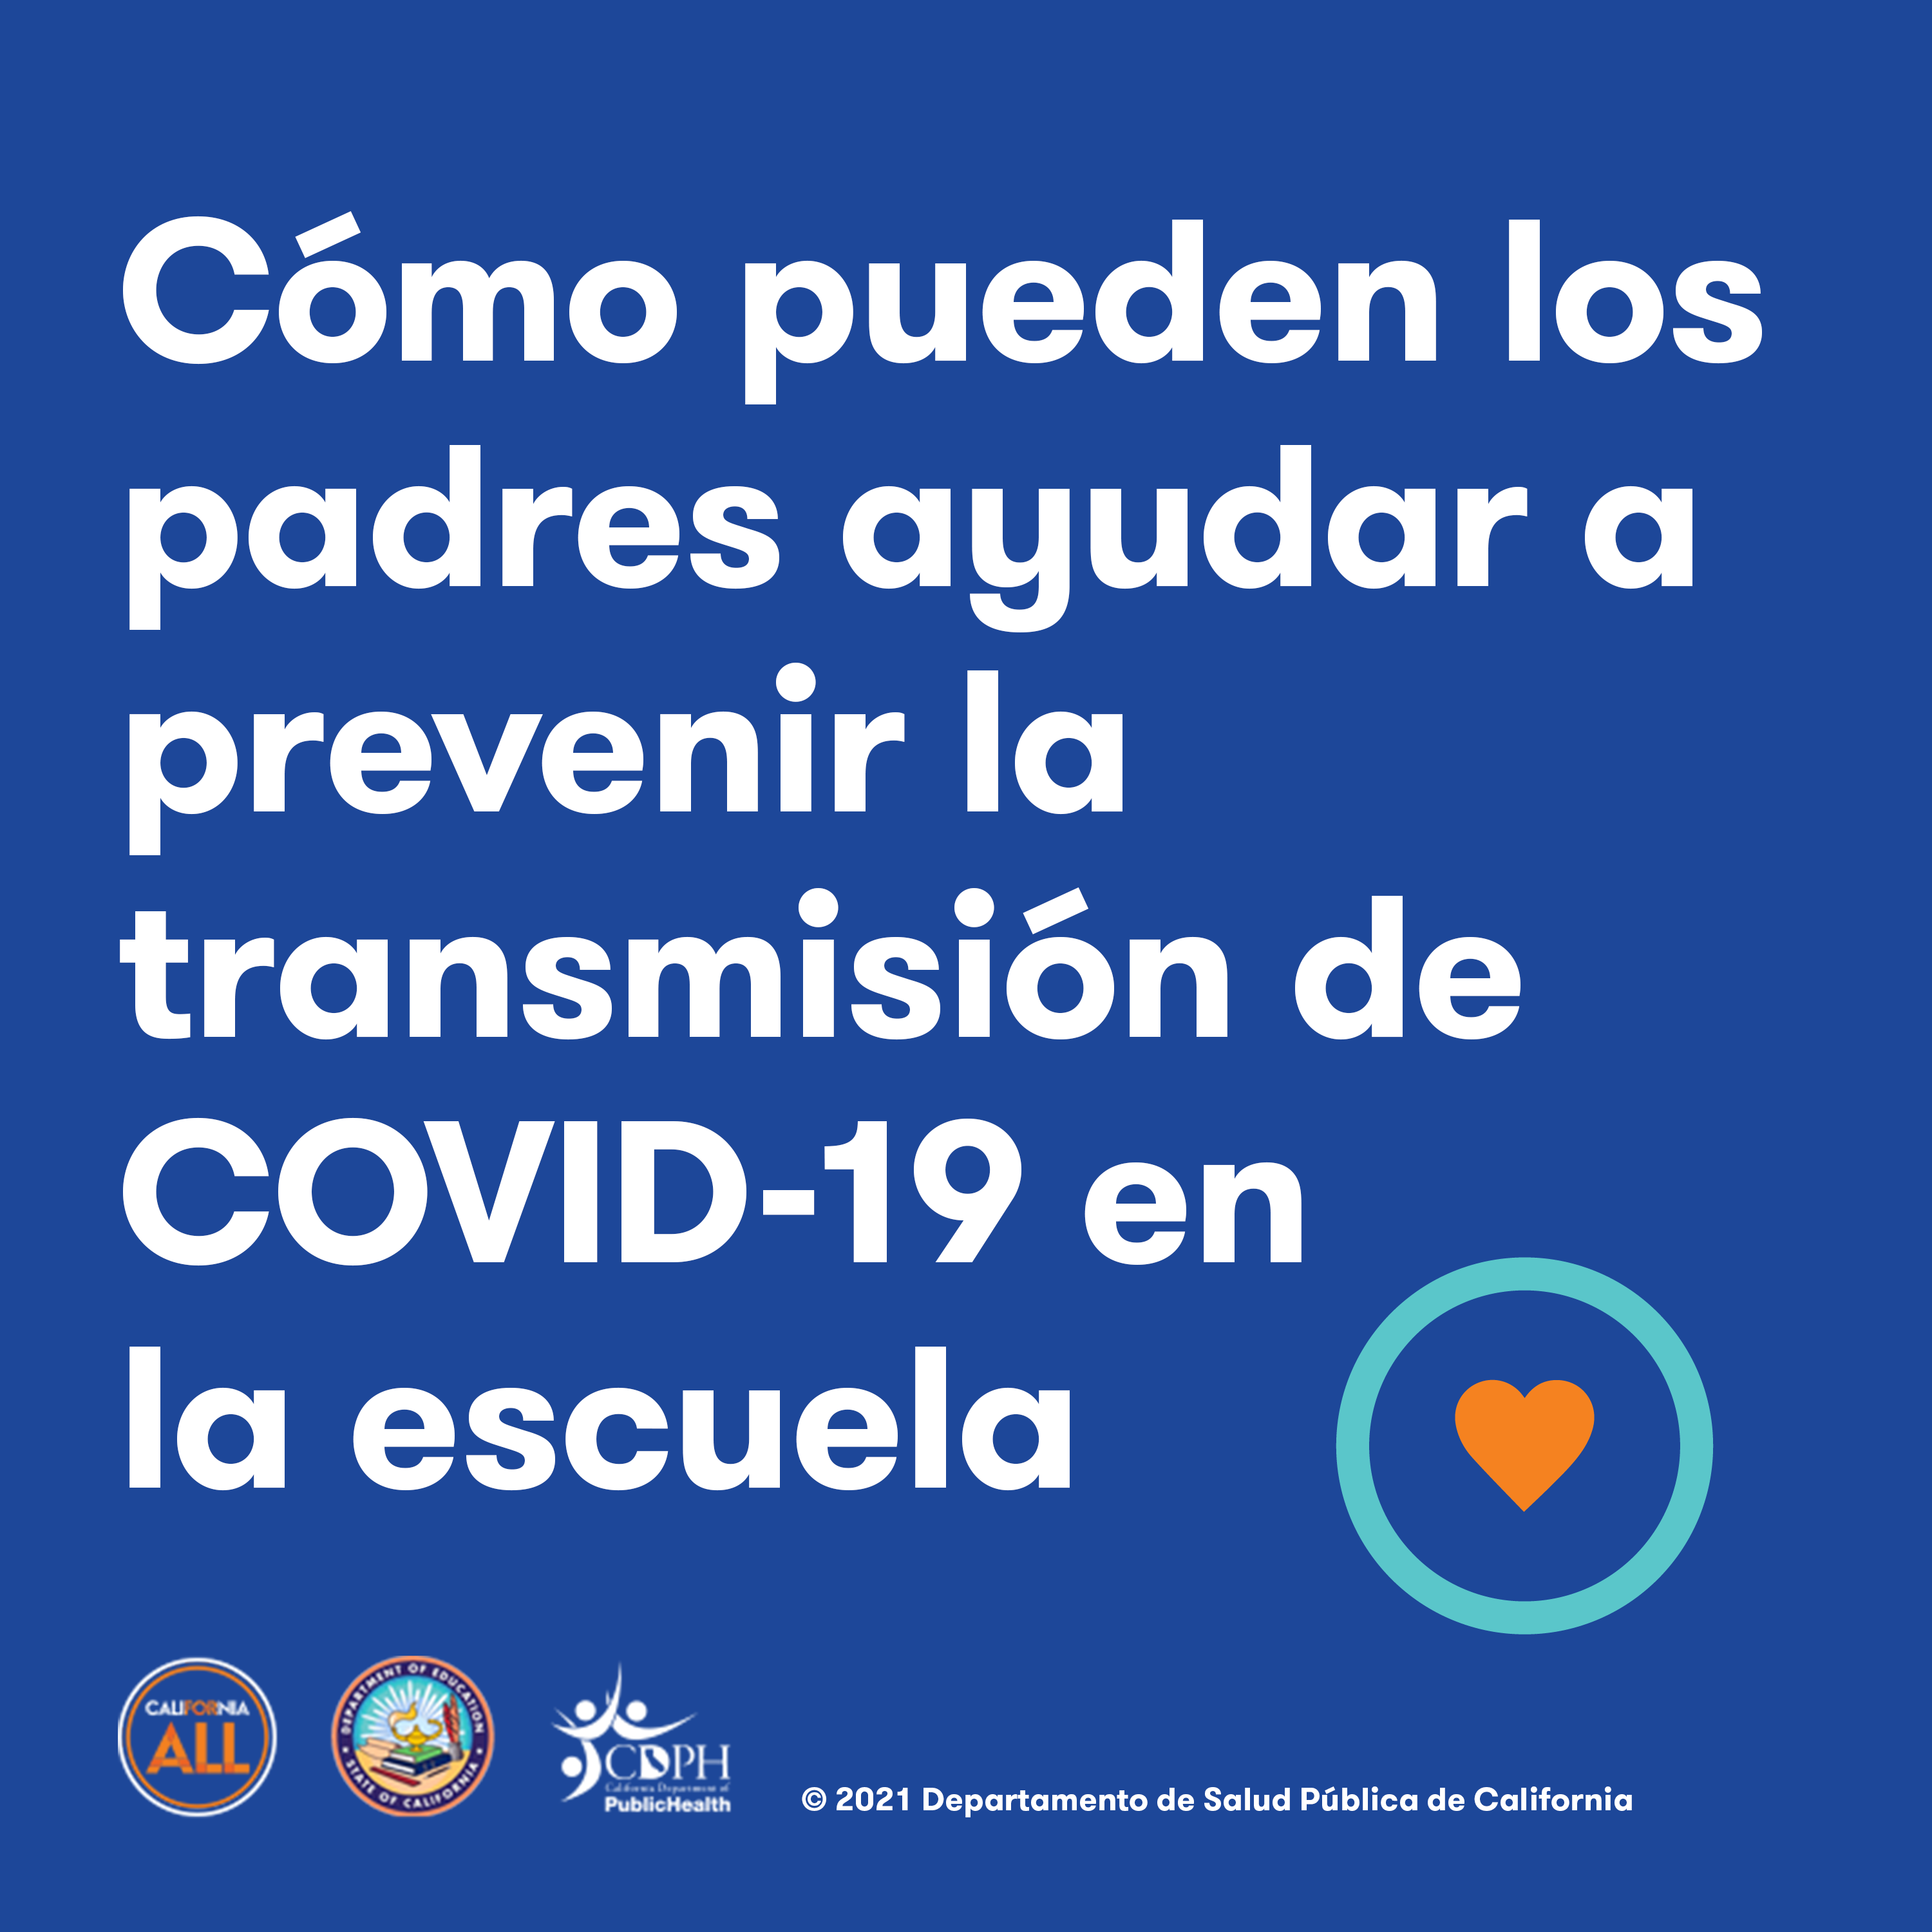 Cómo pueden los padres ayudar a prevenir la transmisión de COVID-19 en la escuela